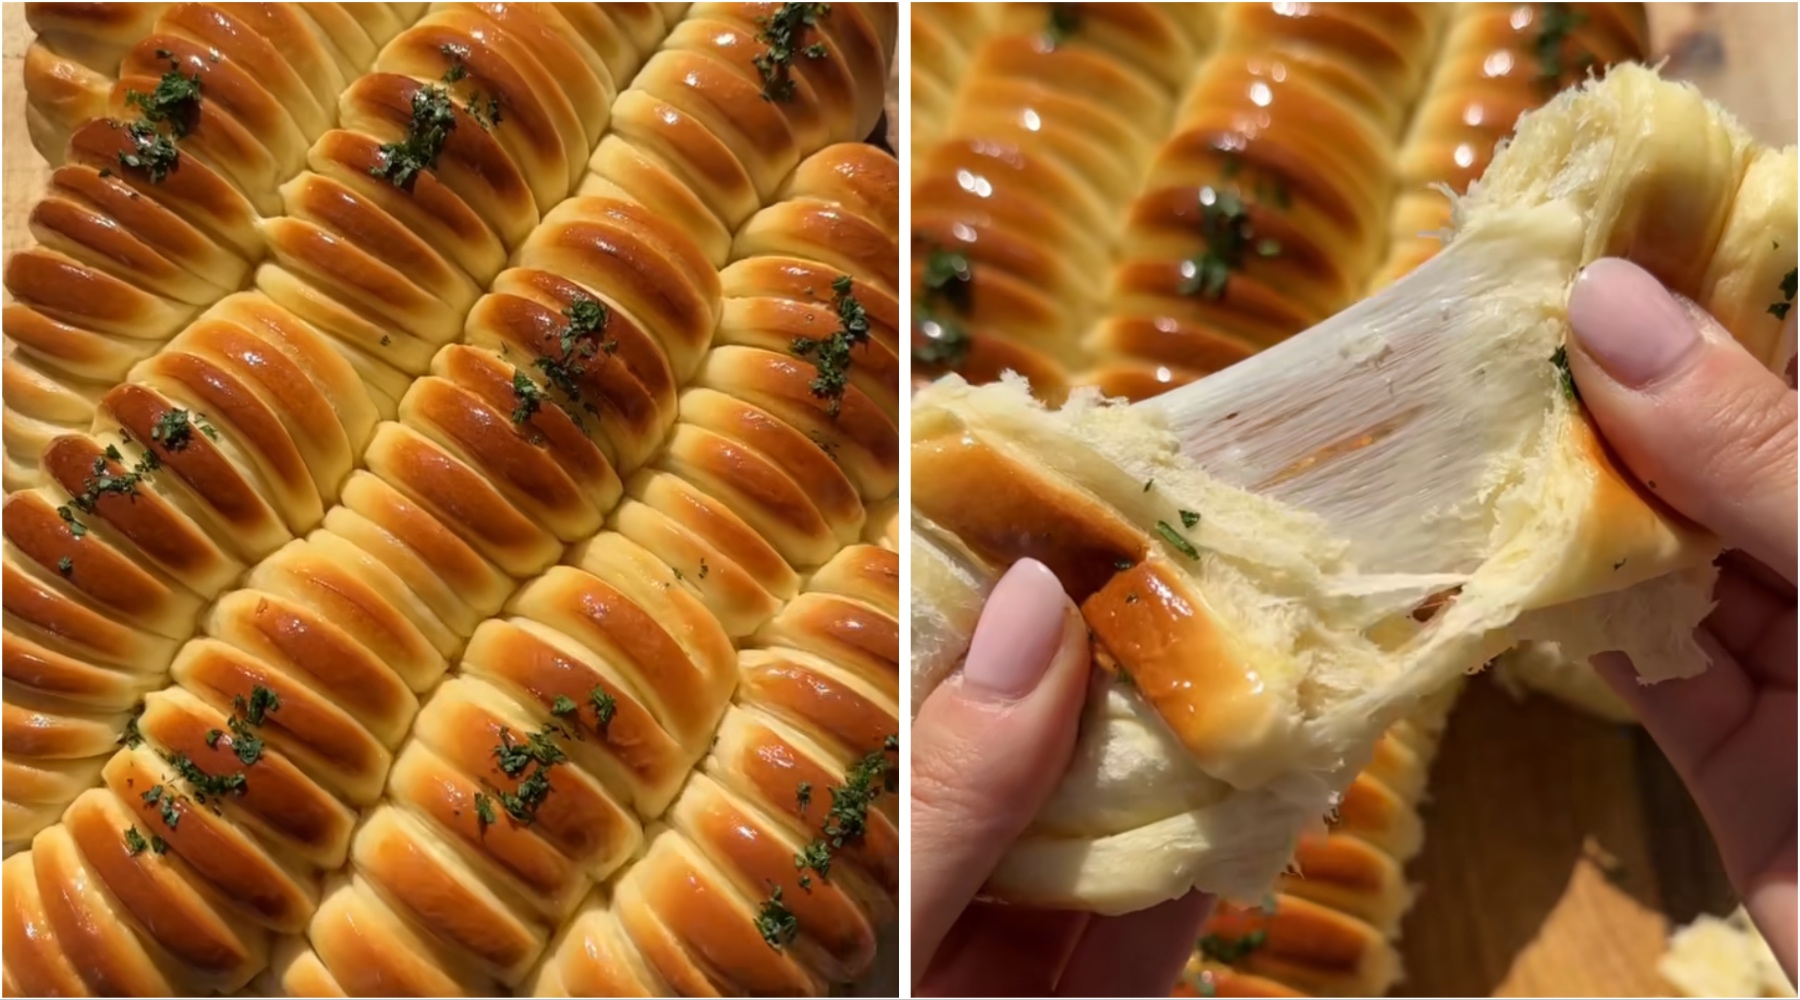 Viralni domaći kruh punjen mozzarellom – pripremljen na japanski način